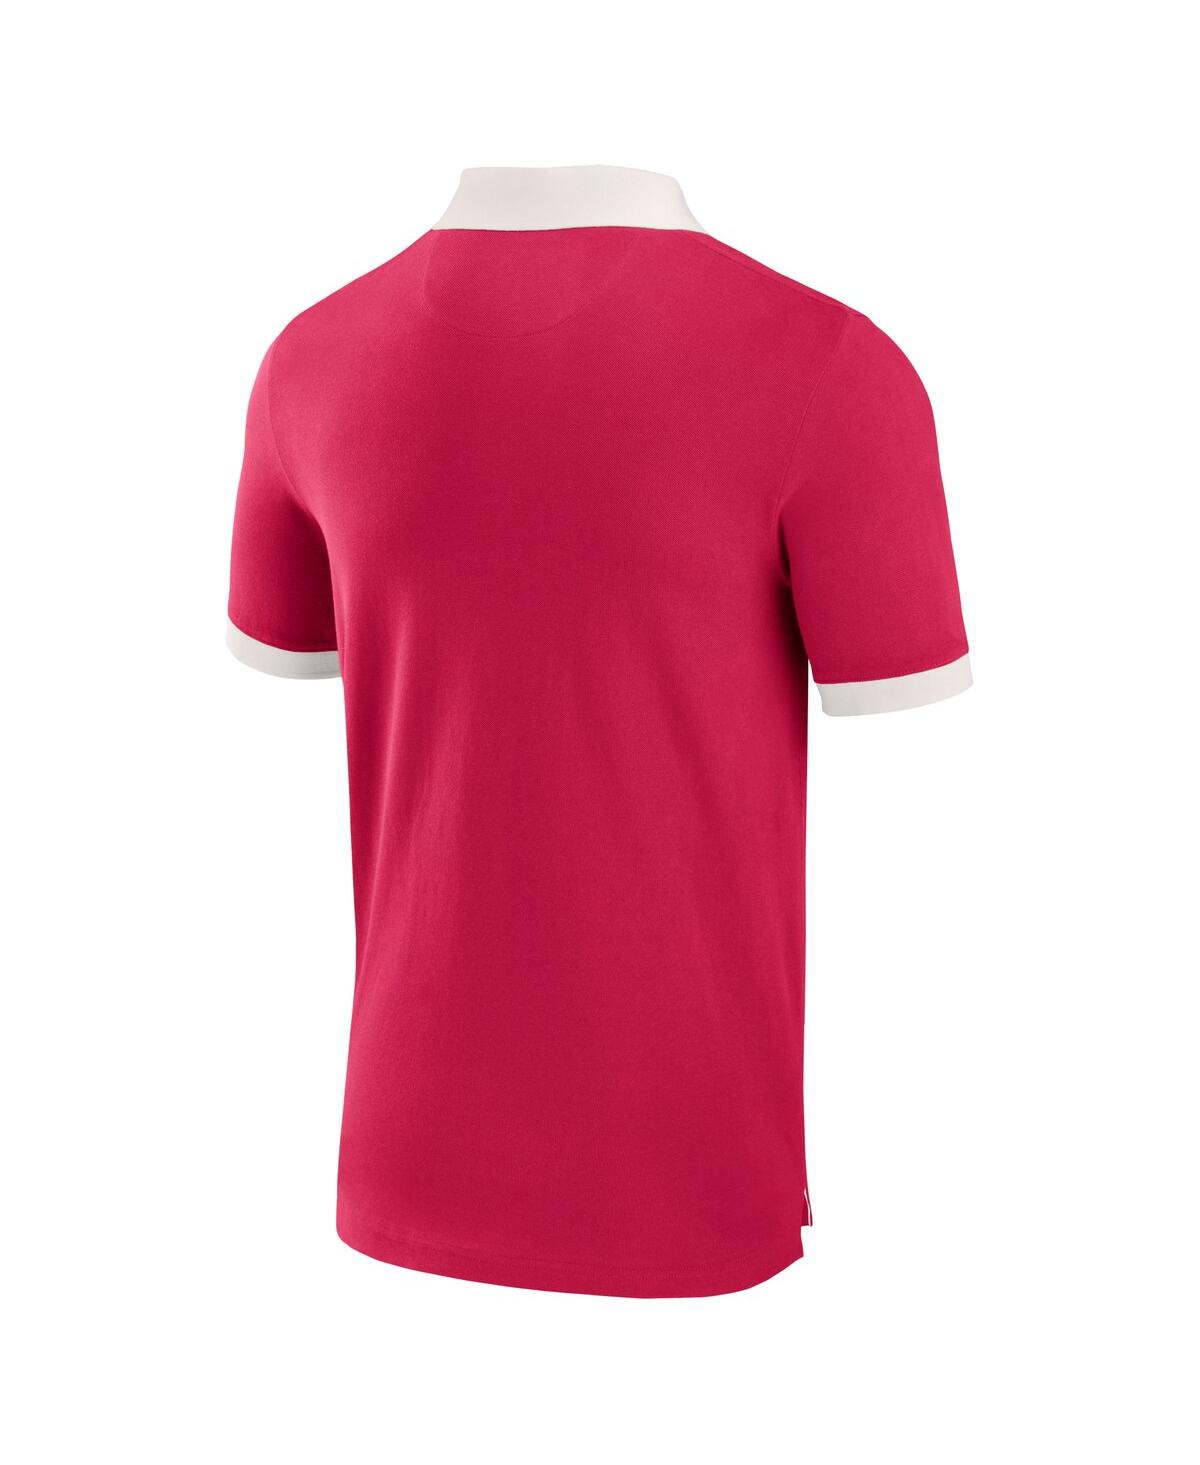 Shop Fanatics Men's  Red St. Louis City Sc Second Period Polo Shirt